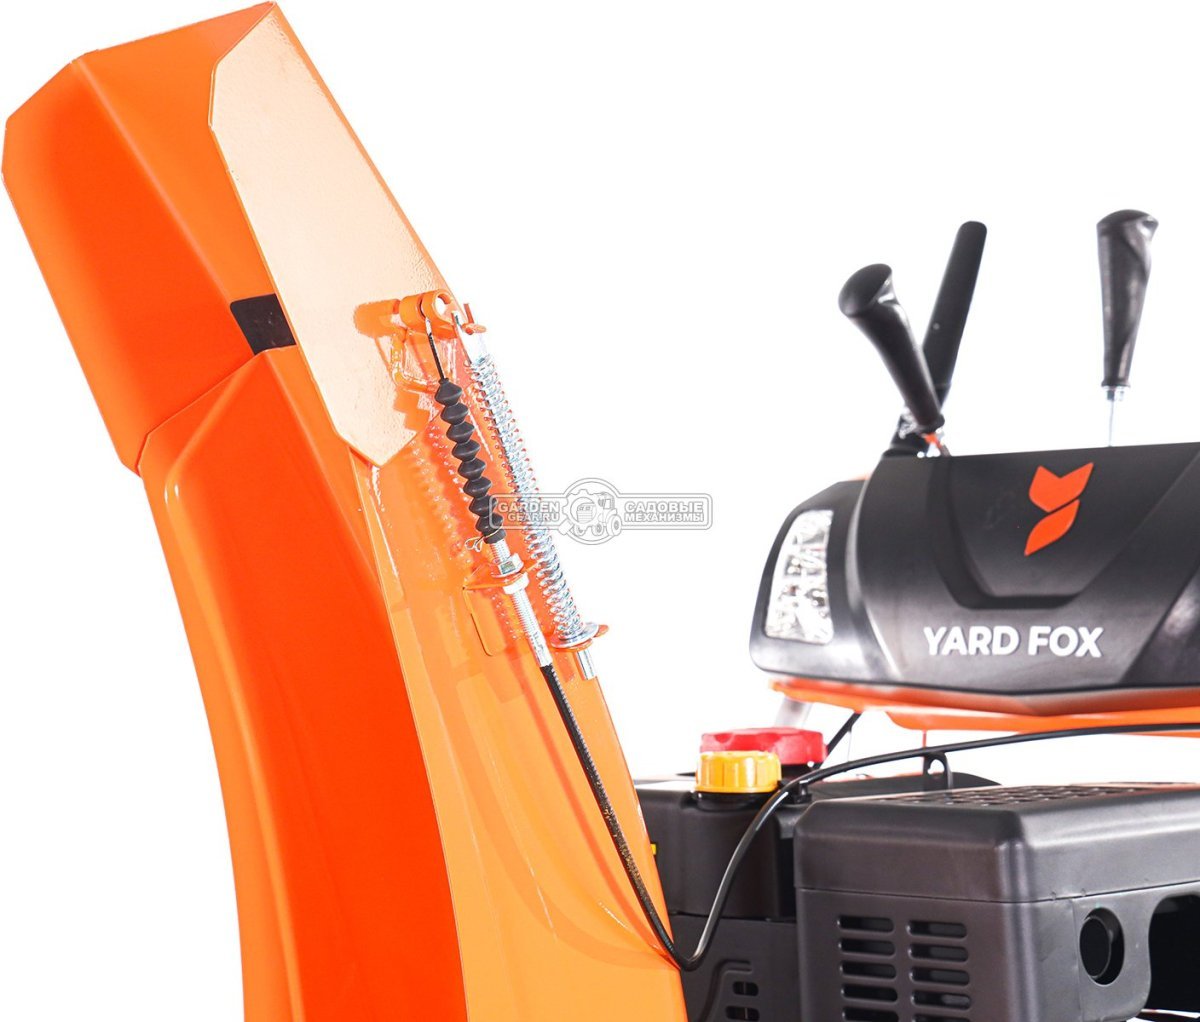 Снегоуборщик Yard Fox 7154E Pro (PRC, 71 см, Loncin, 302 см3, эл/стартер 220В, фара, подогрев рукояток, скорости 6/2, 105 кг)